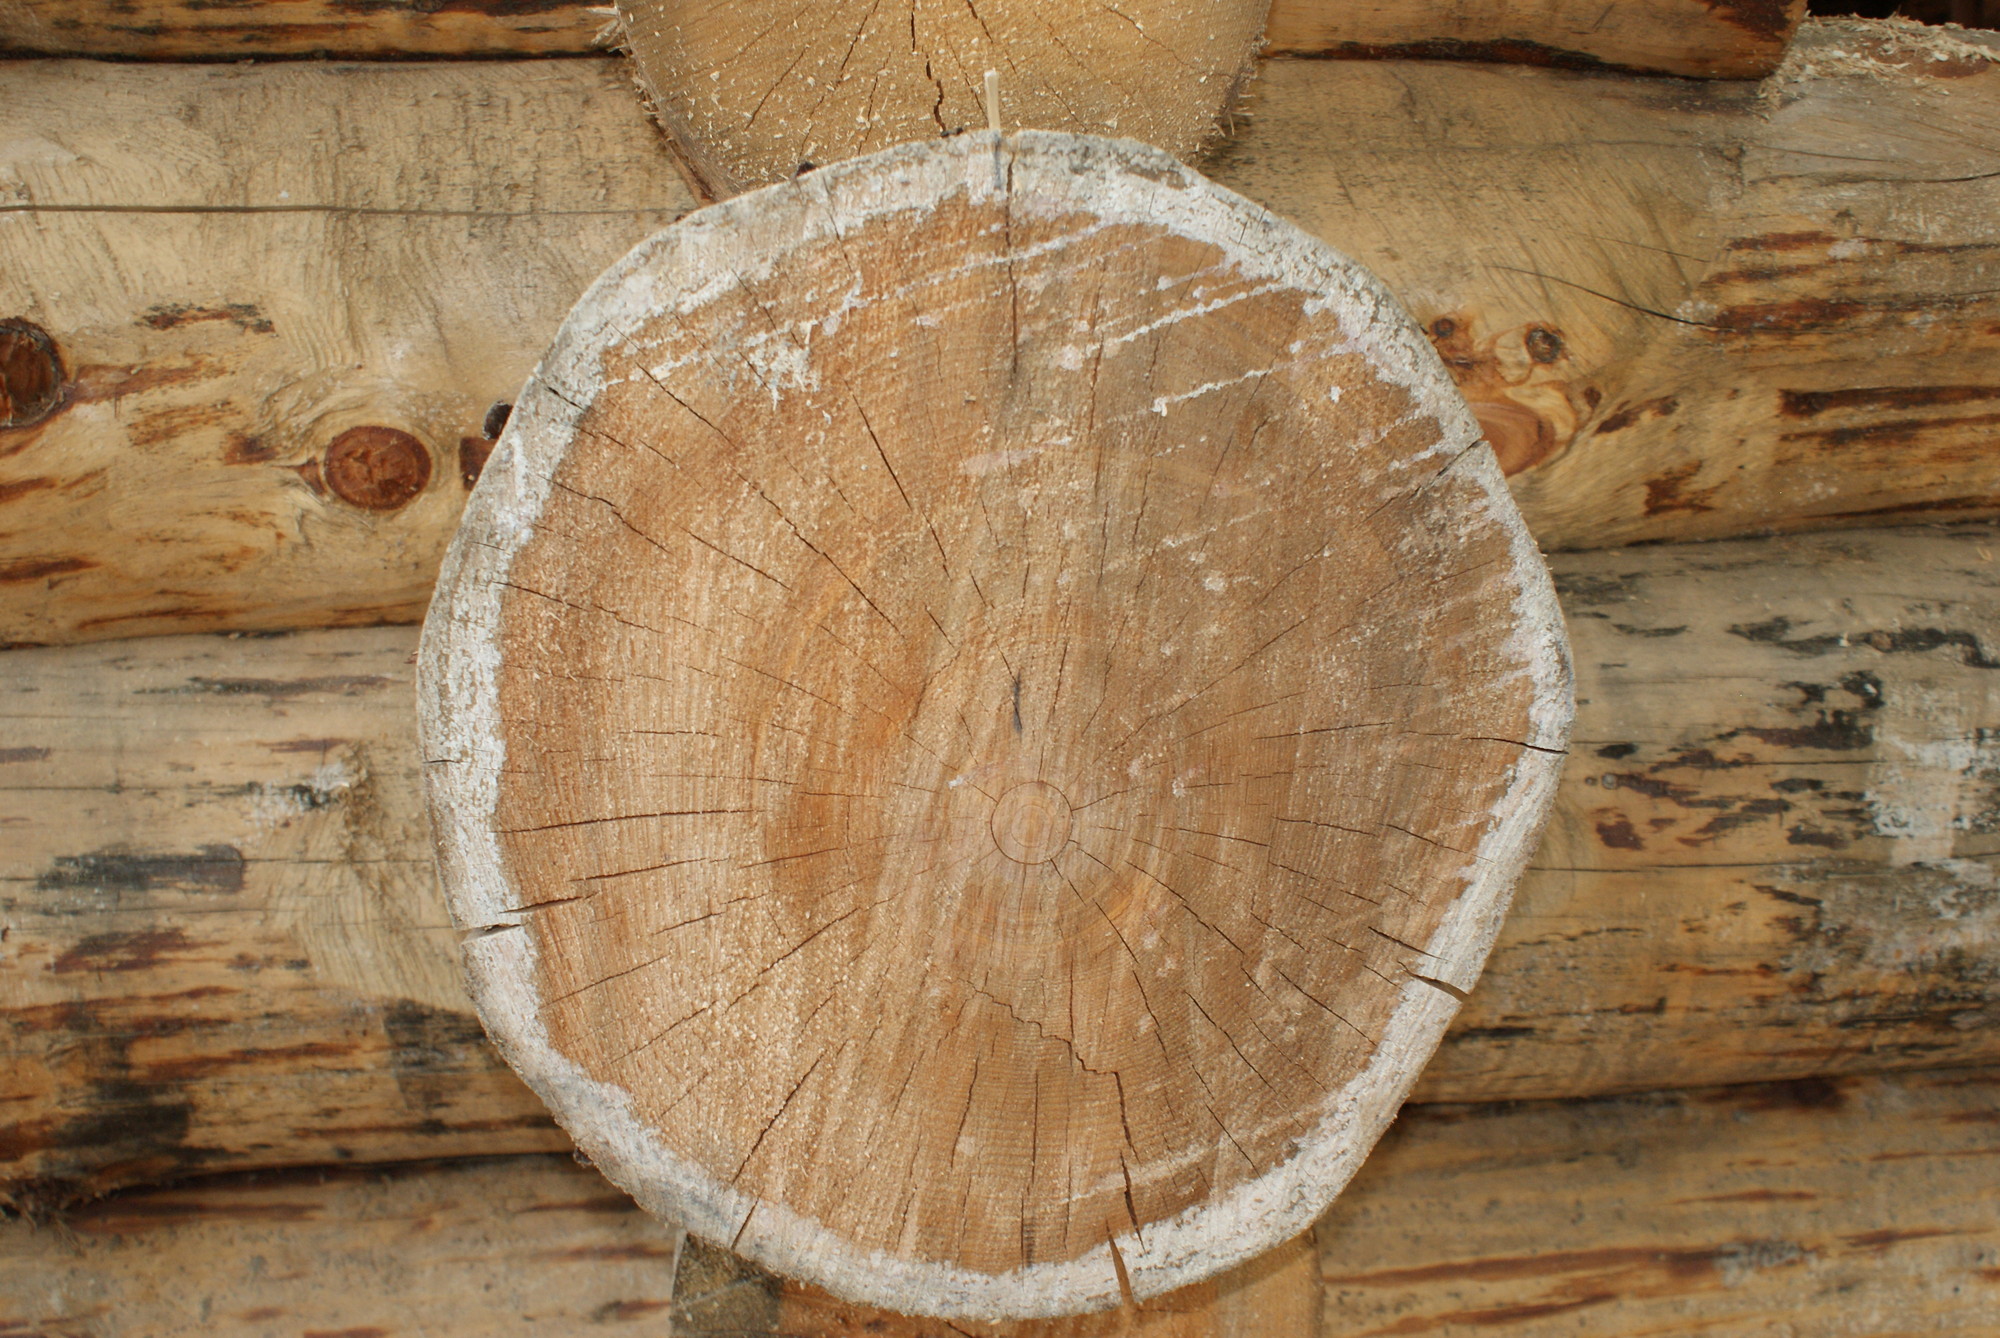 Timber Solutions модернизация и оптимизация процессов лесопильных, деревообрабатывающих и мебельных  производств 3